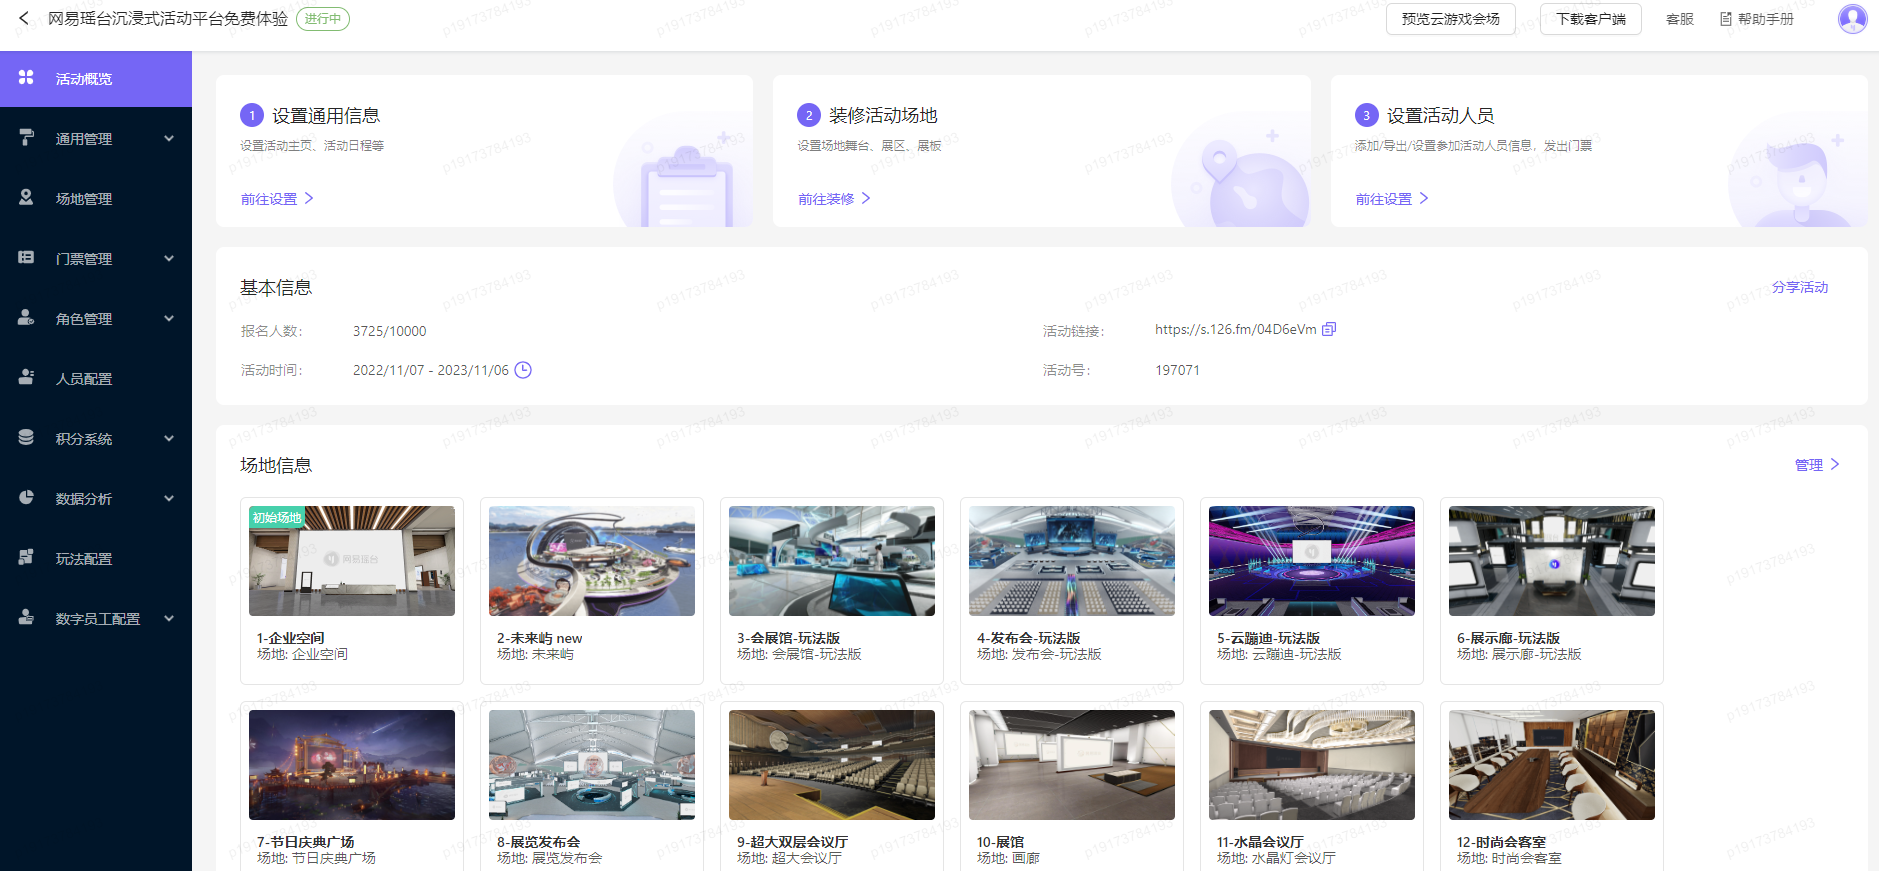 这张图片显示的是一个中文网页界面，包含多个监控摄像头的实时画面缩略图，旁边有相关的文字说明和链接。